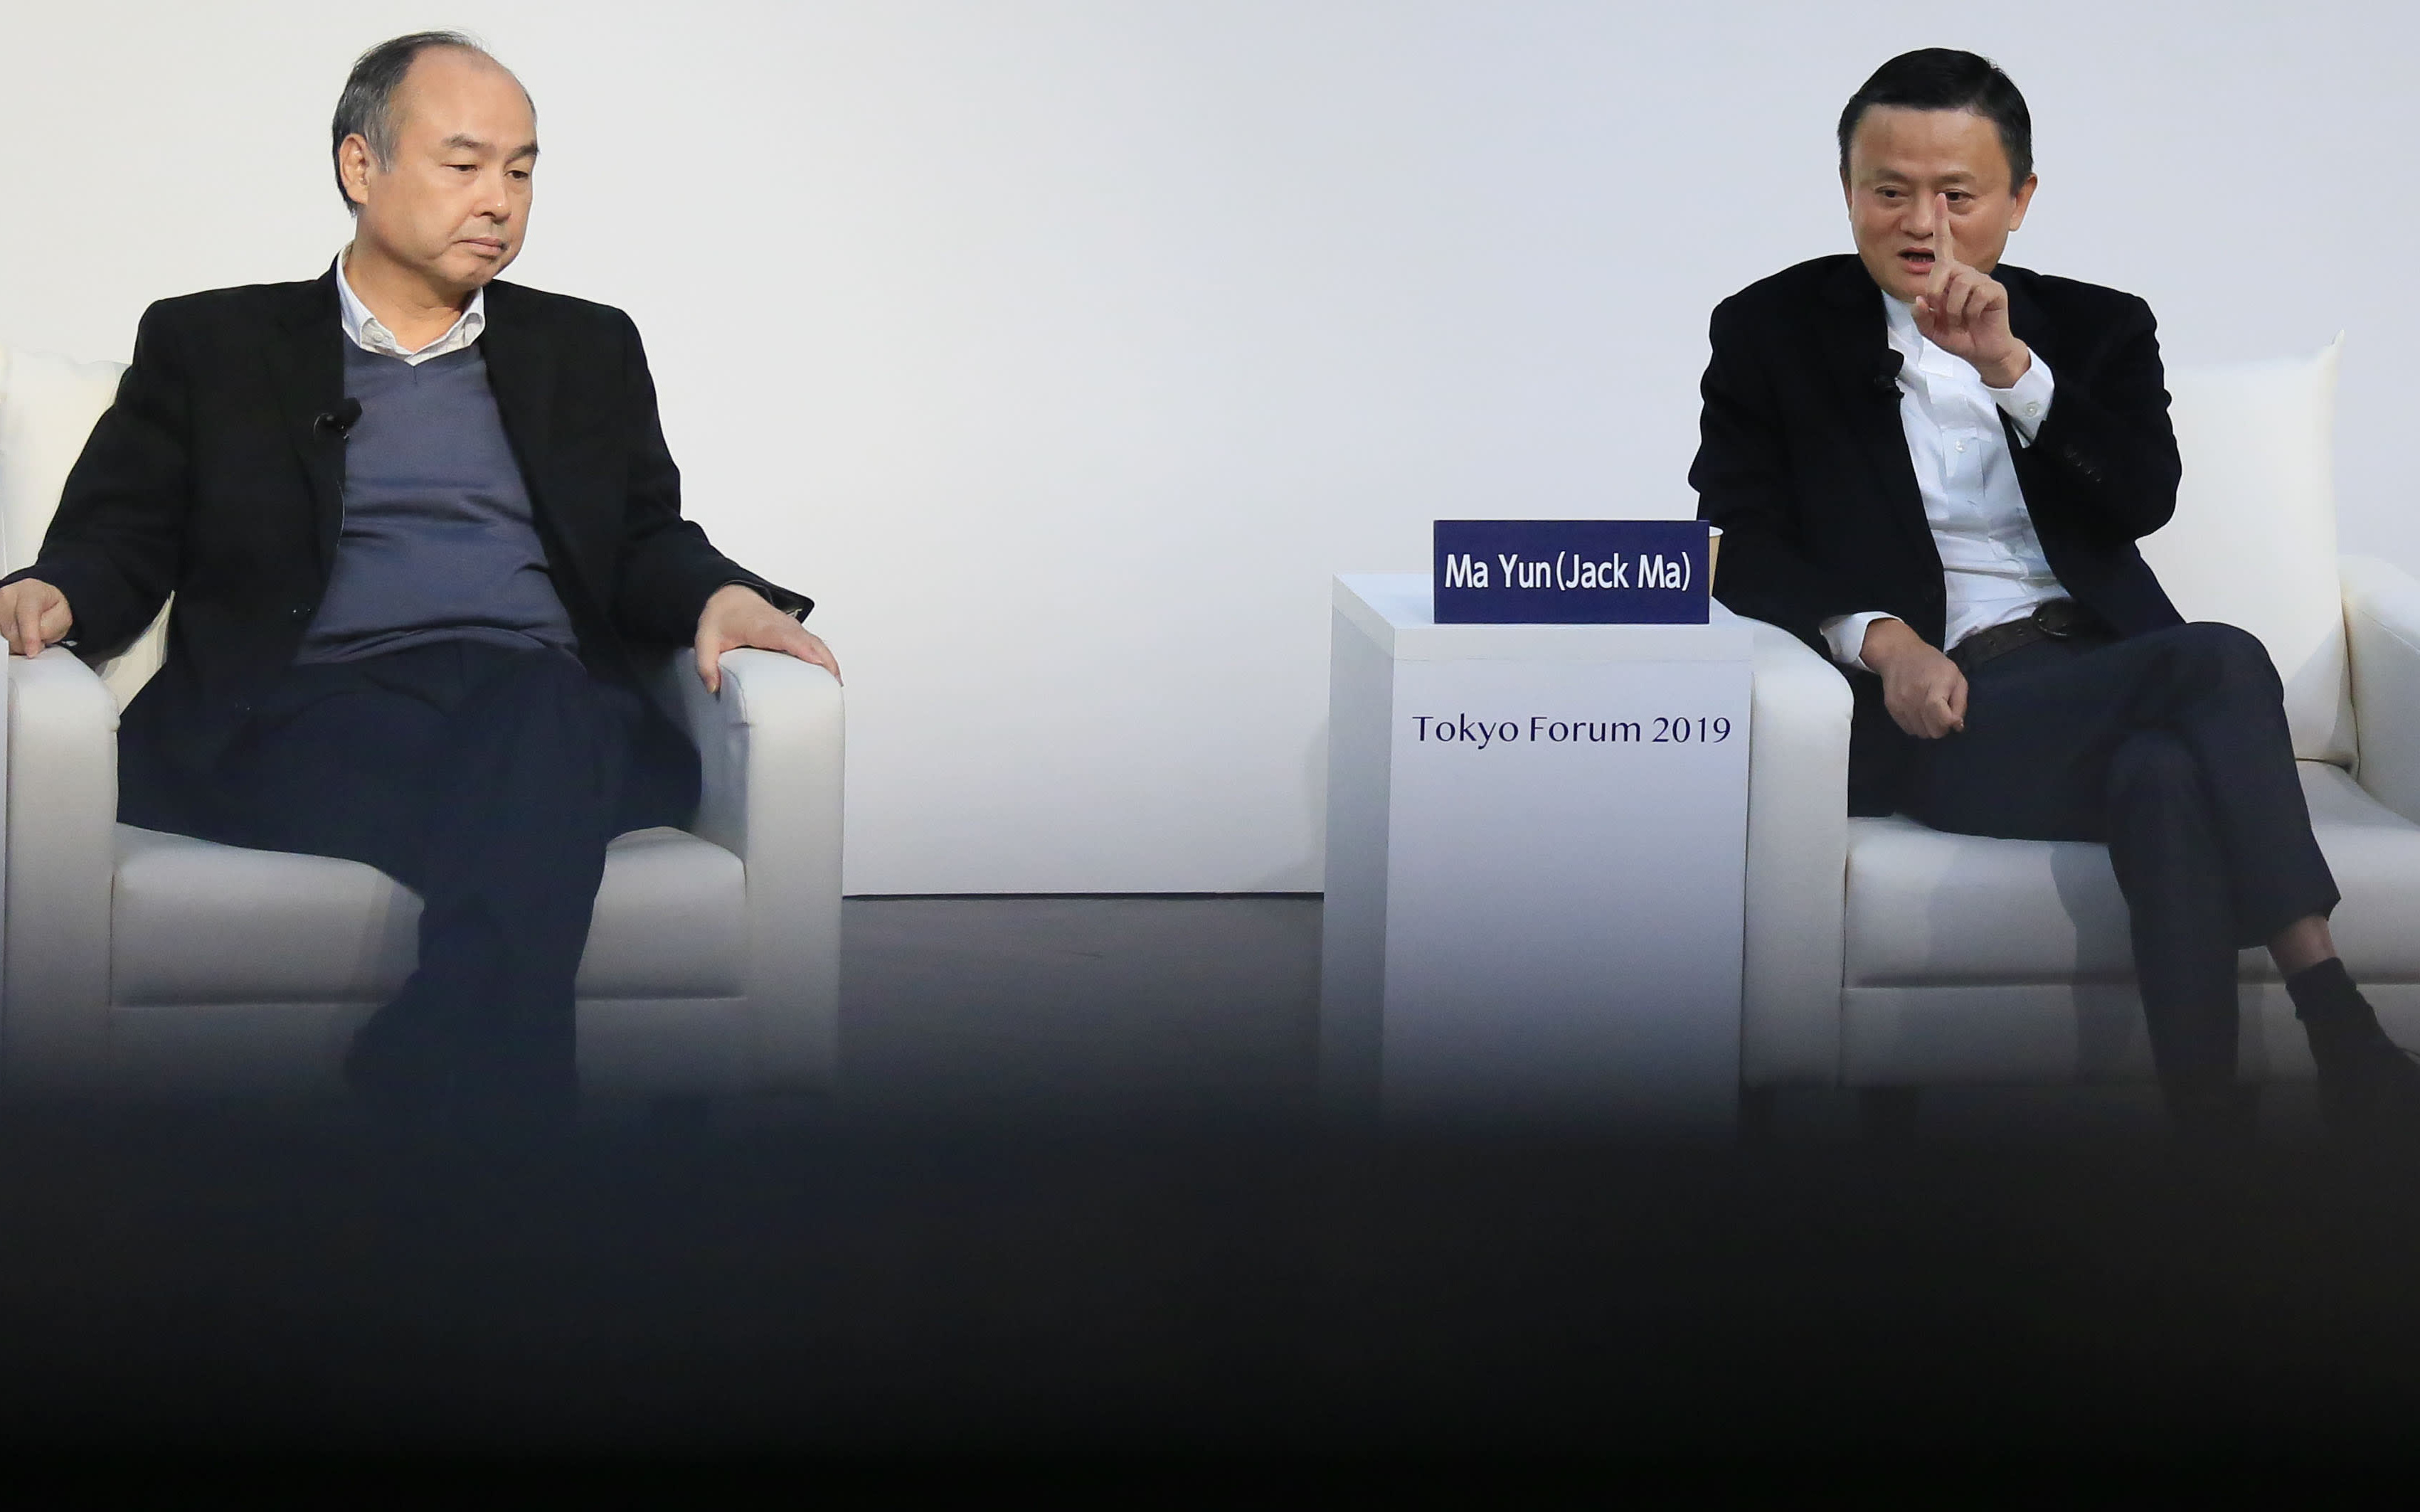 Từng bảo vệ Masayoshi Son, động viên ‘chúng ta điên nhưng không ngu dốt’, Jack Ma vừa chính thức rời hội đồng quản trị Softbank sau 13 năm gắn bó